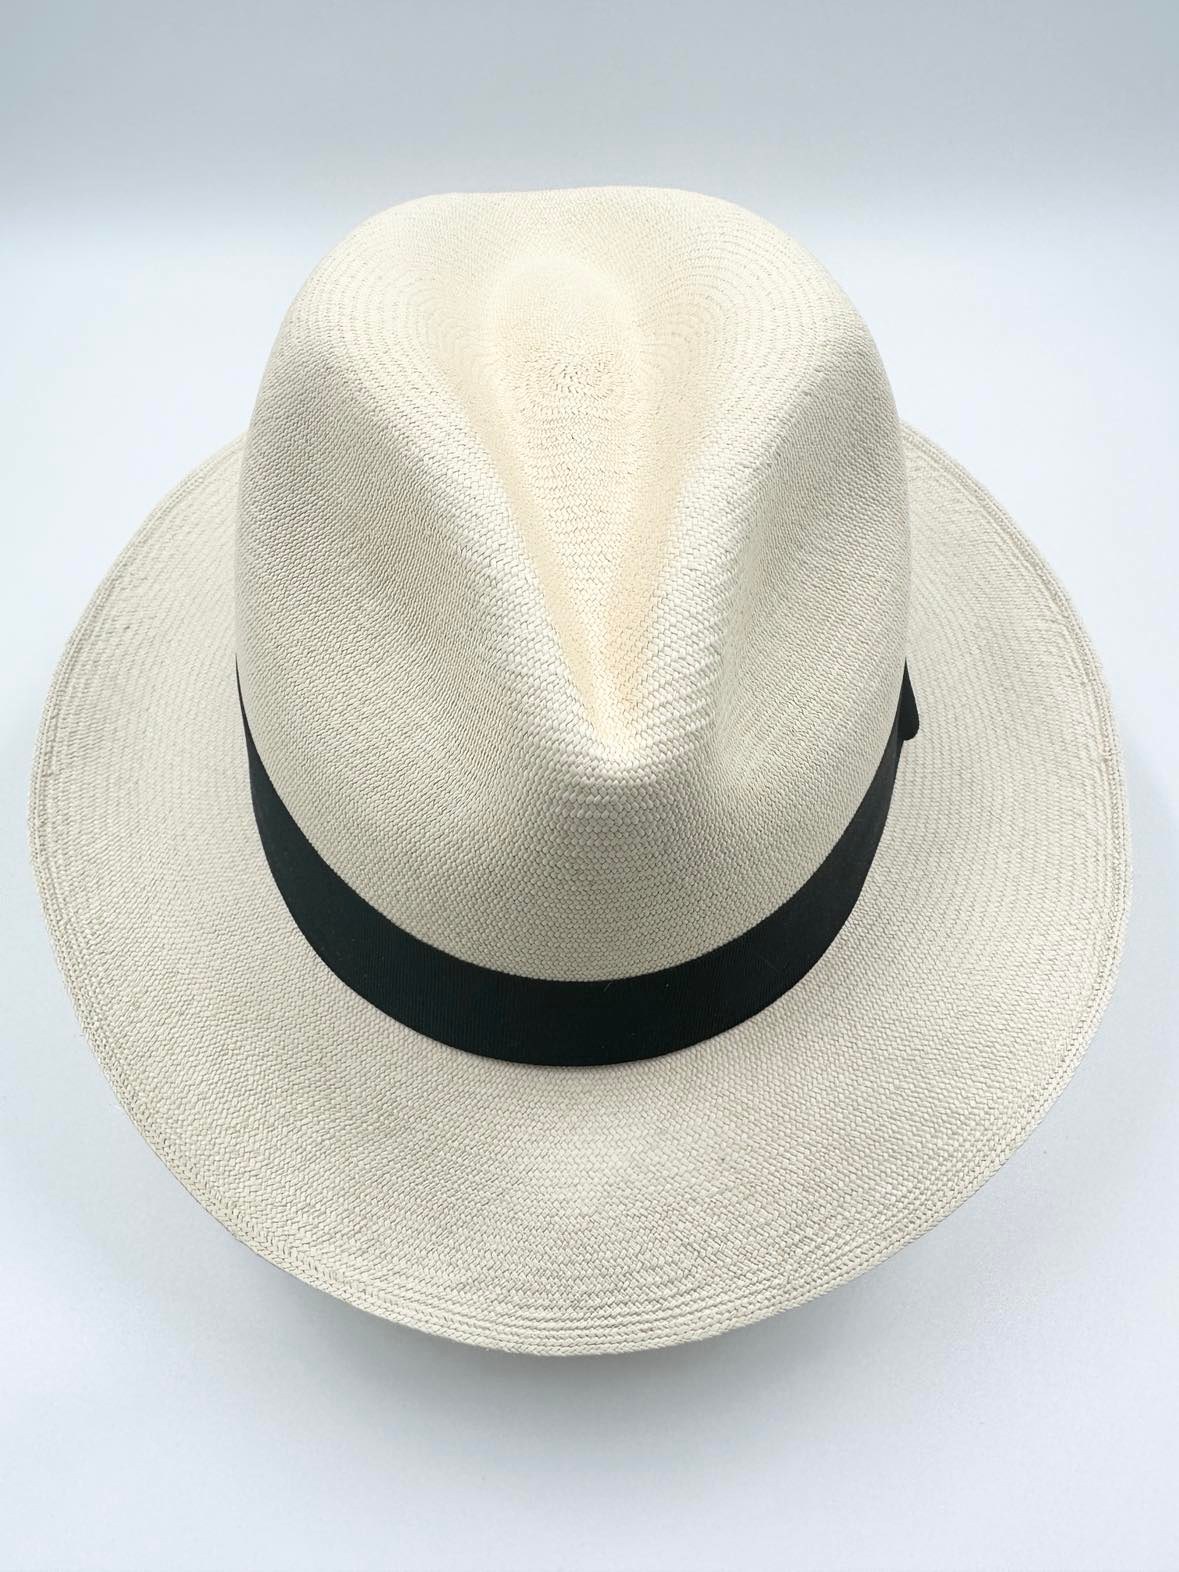 Ægte Montecristi Fedora Panama Hat med en kvalitet på 21-22 fletninger pr. inch - en unik og håndflettet hat efter ældgamle traditioner og principper